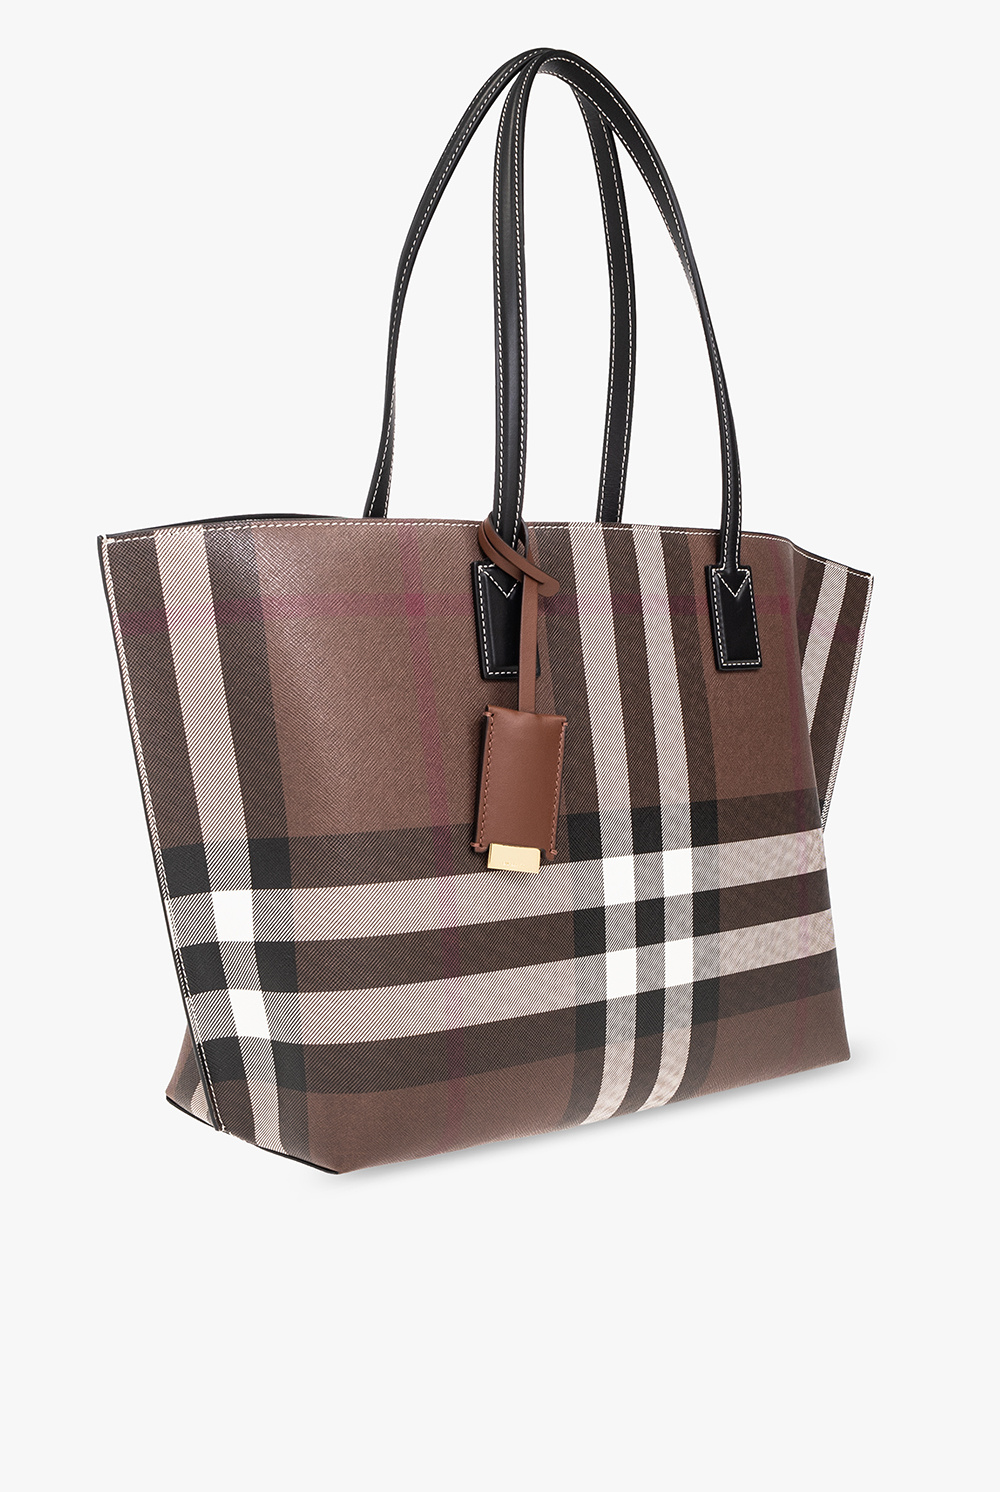 Burberry ‘TB Medium’ shopper bag